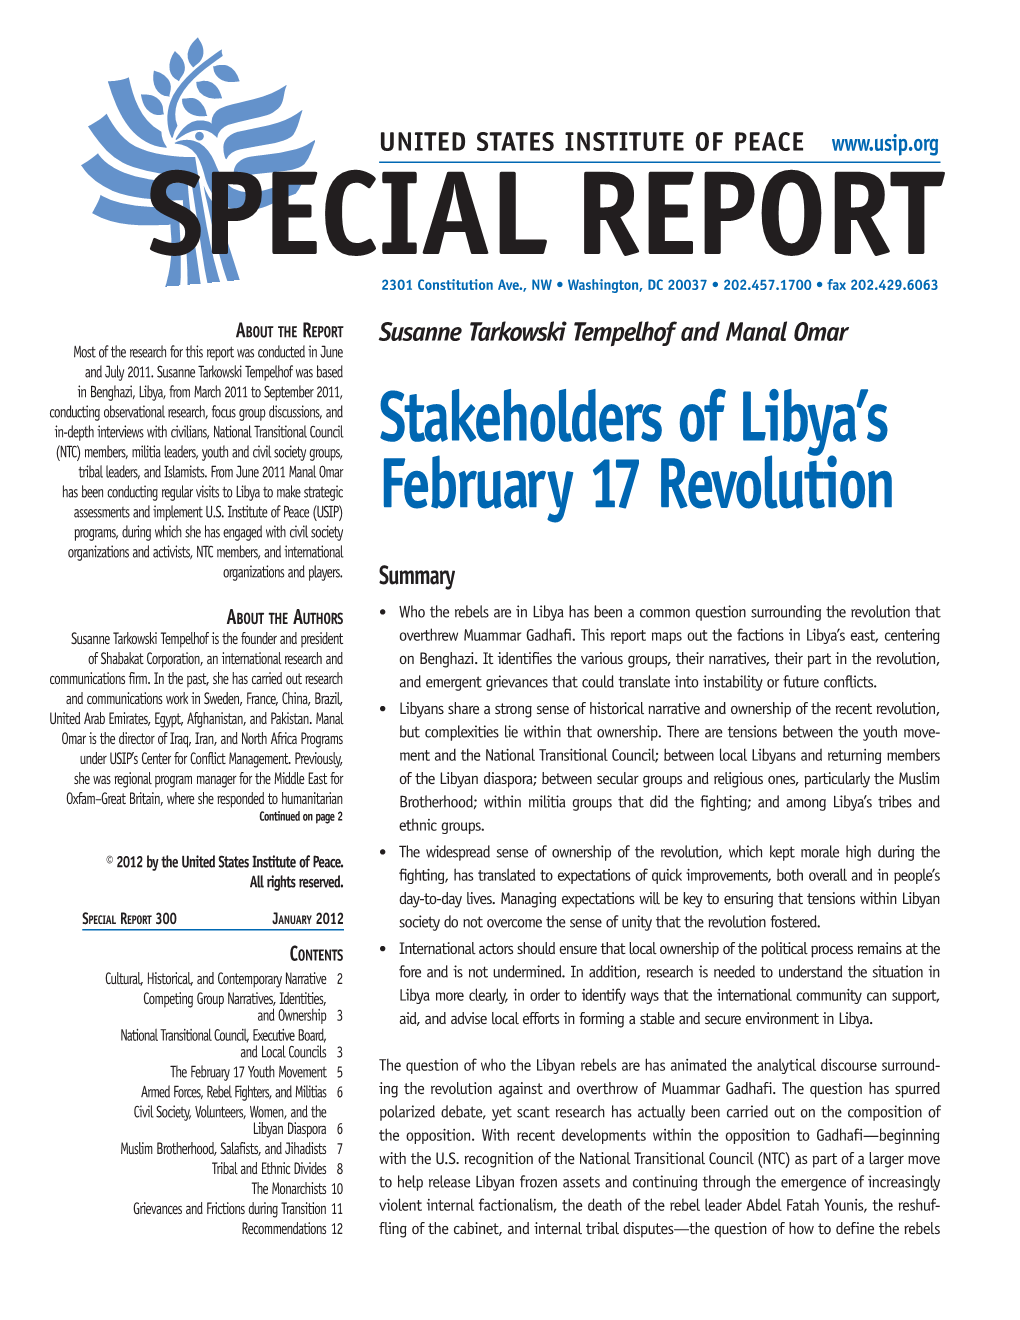 Stakeholders of Libya's February 17 Revolution